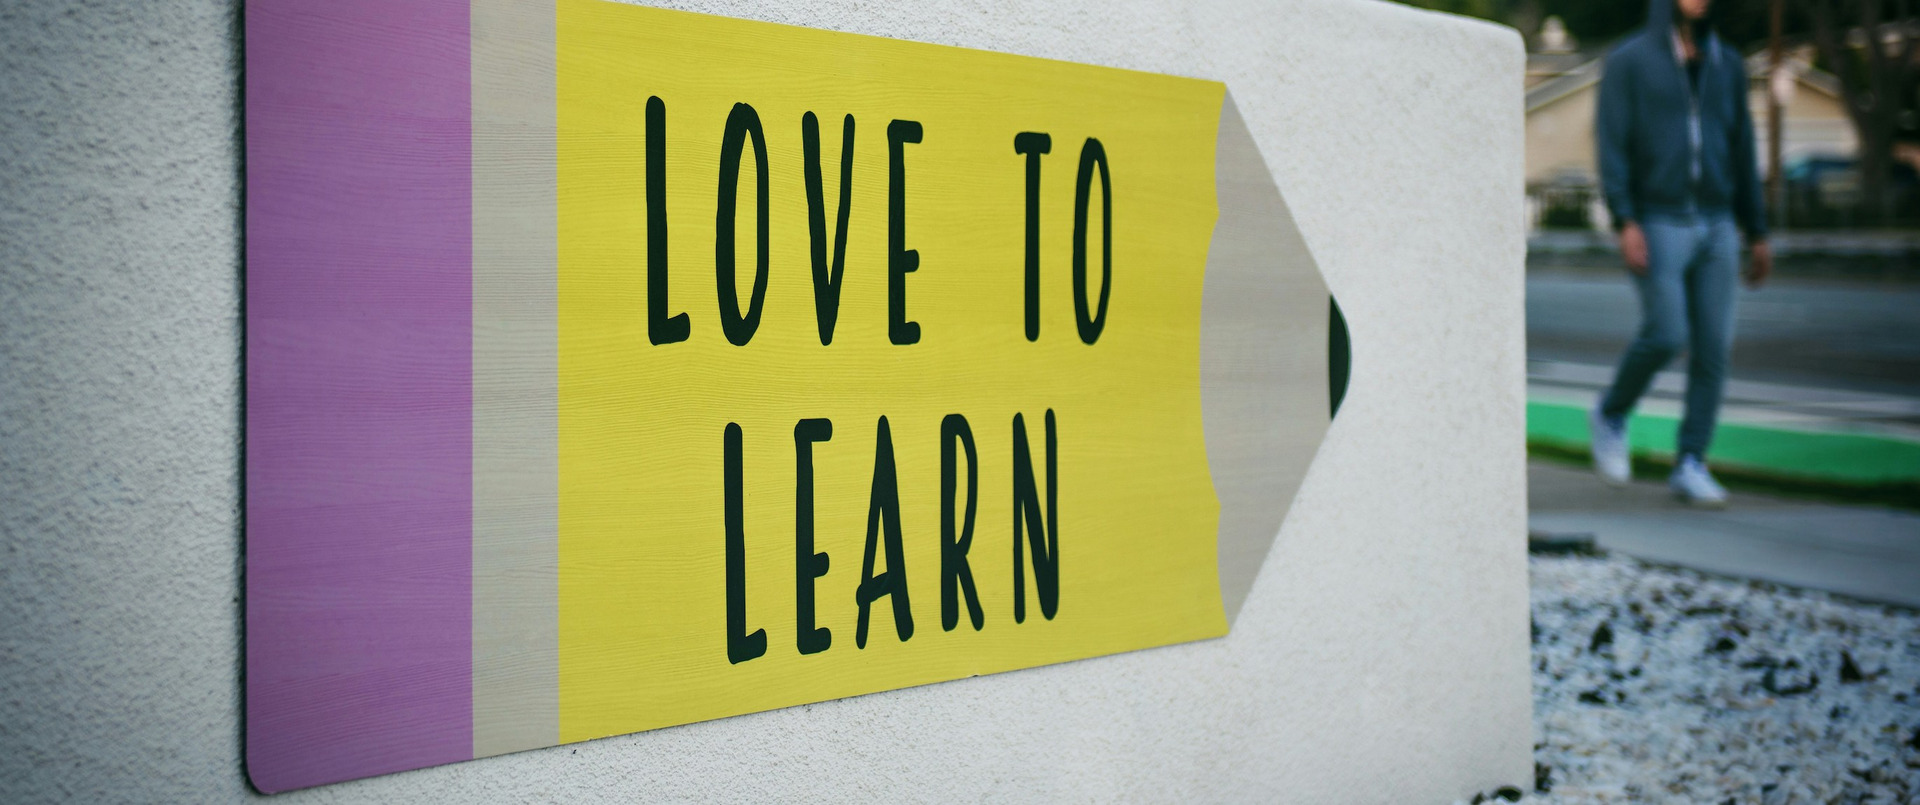 Ein Schild mit der Aufschrift "Love to learn".